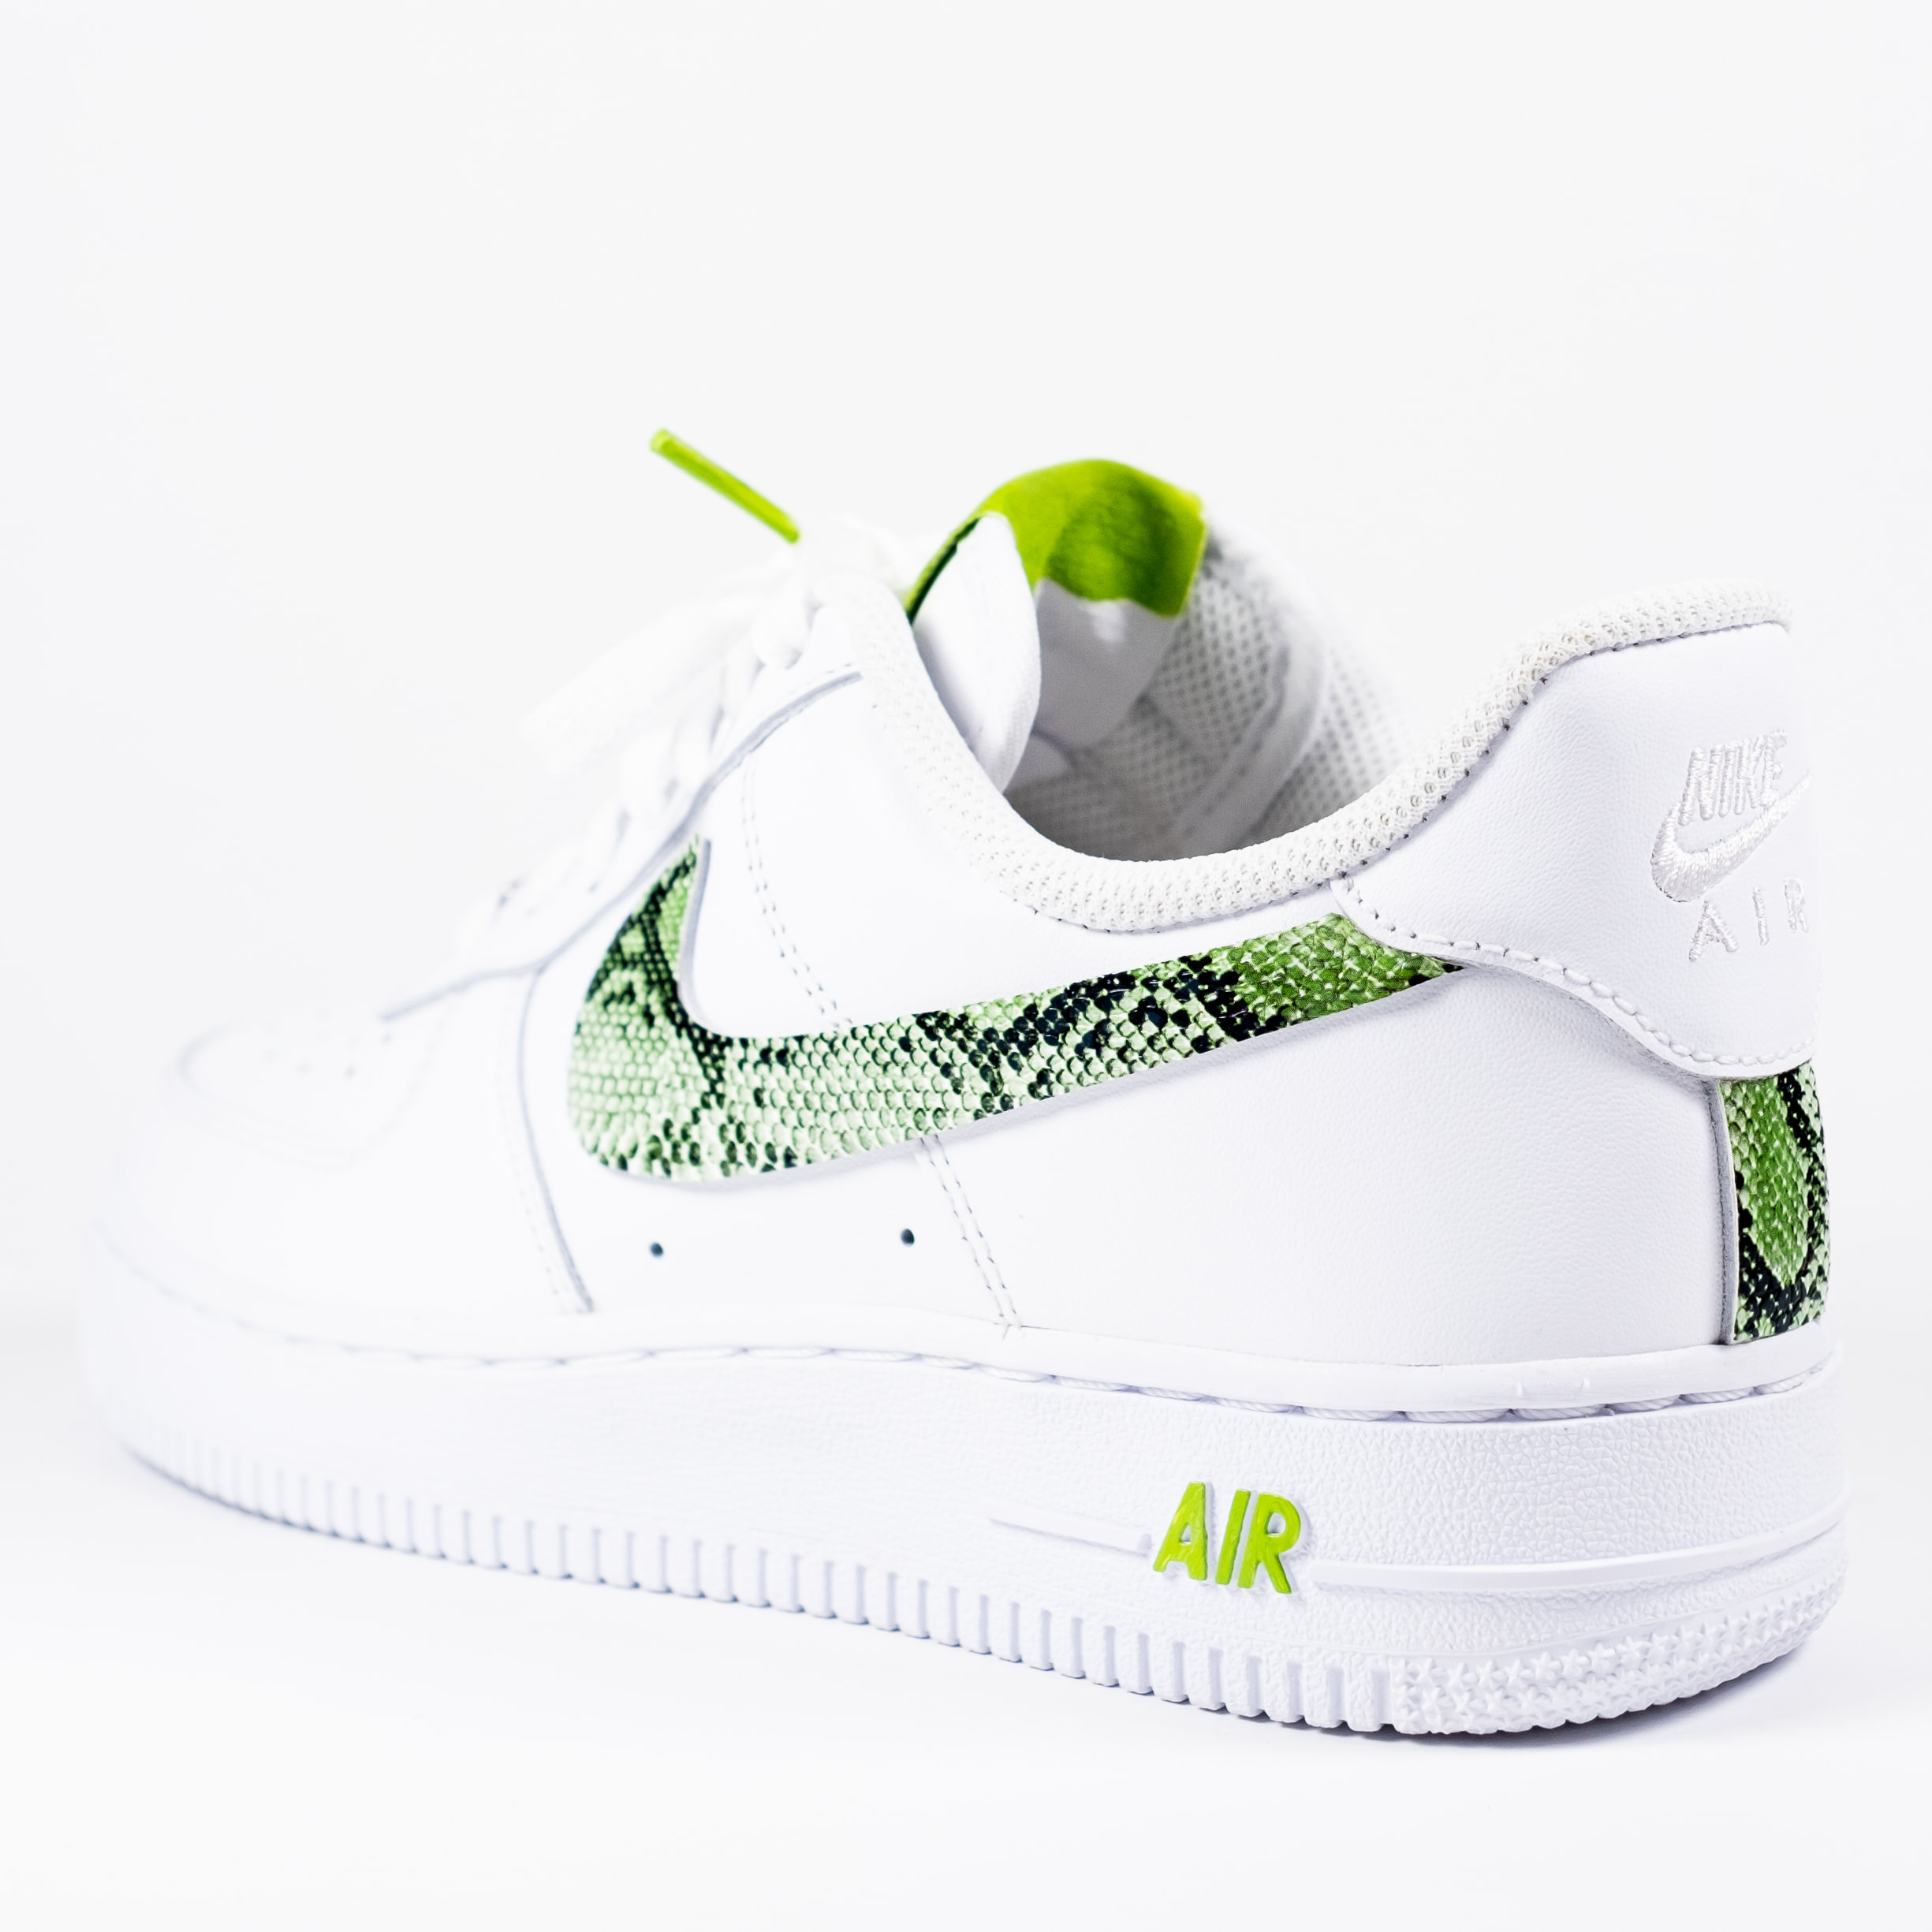 slime green nike air force 1